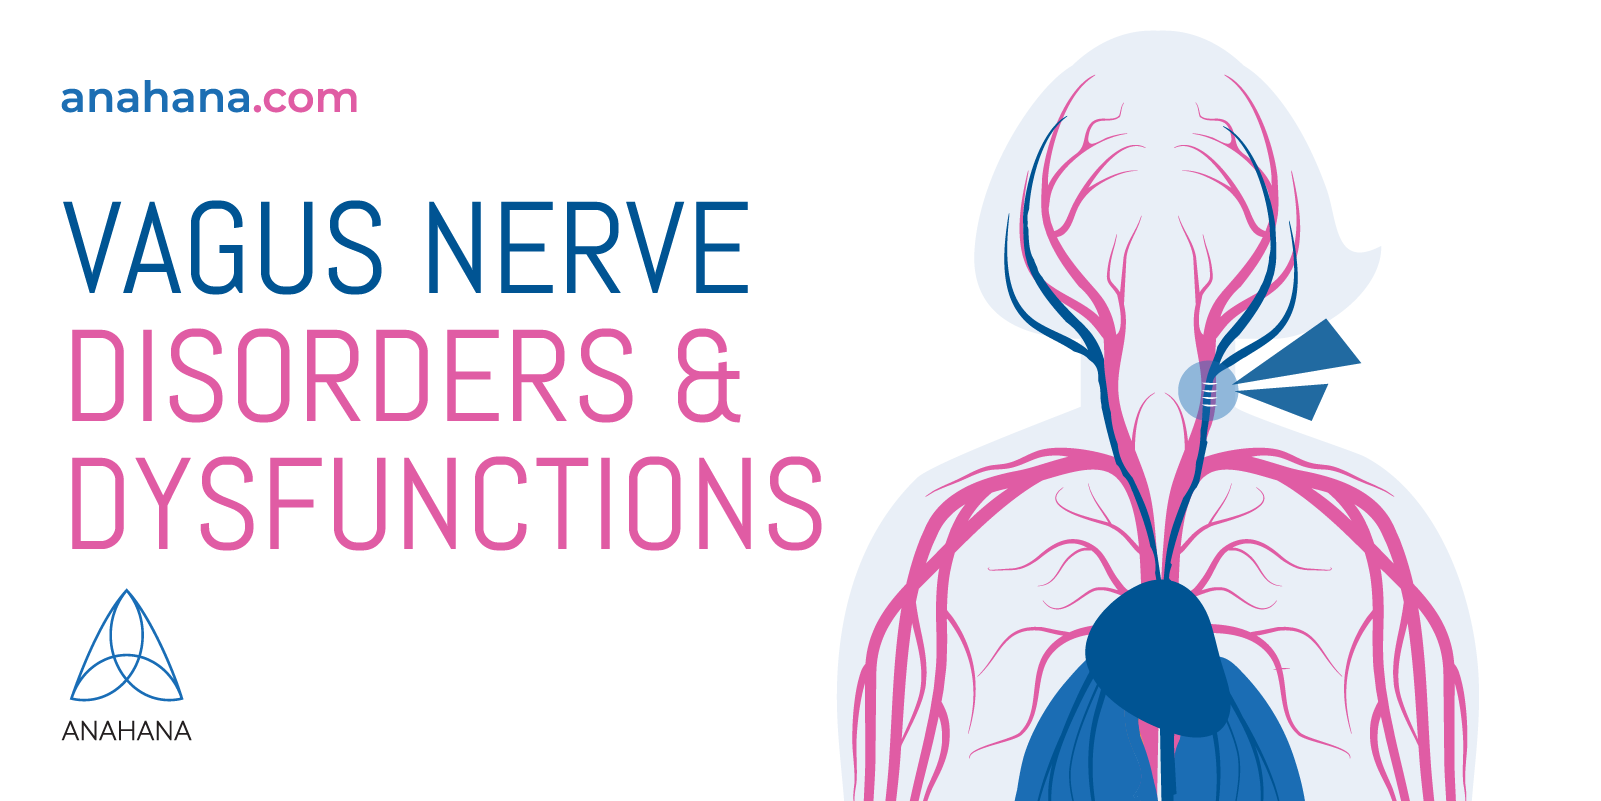 diferite disfuncții și tulburări ale nervului vag